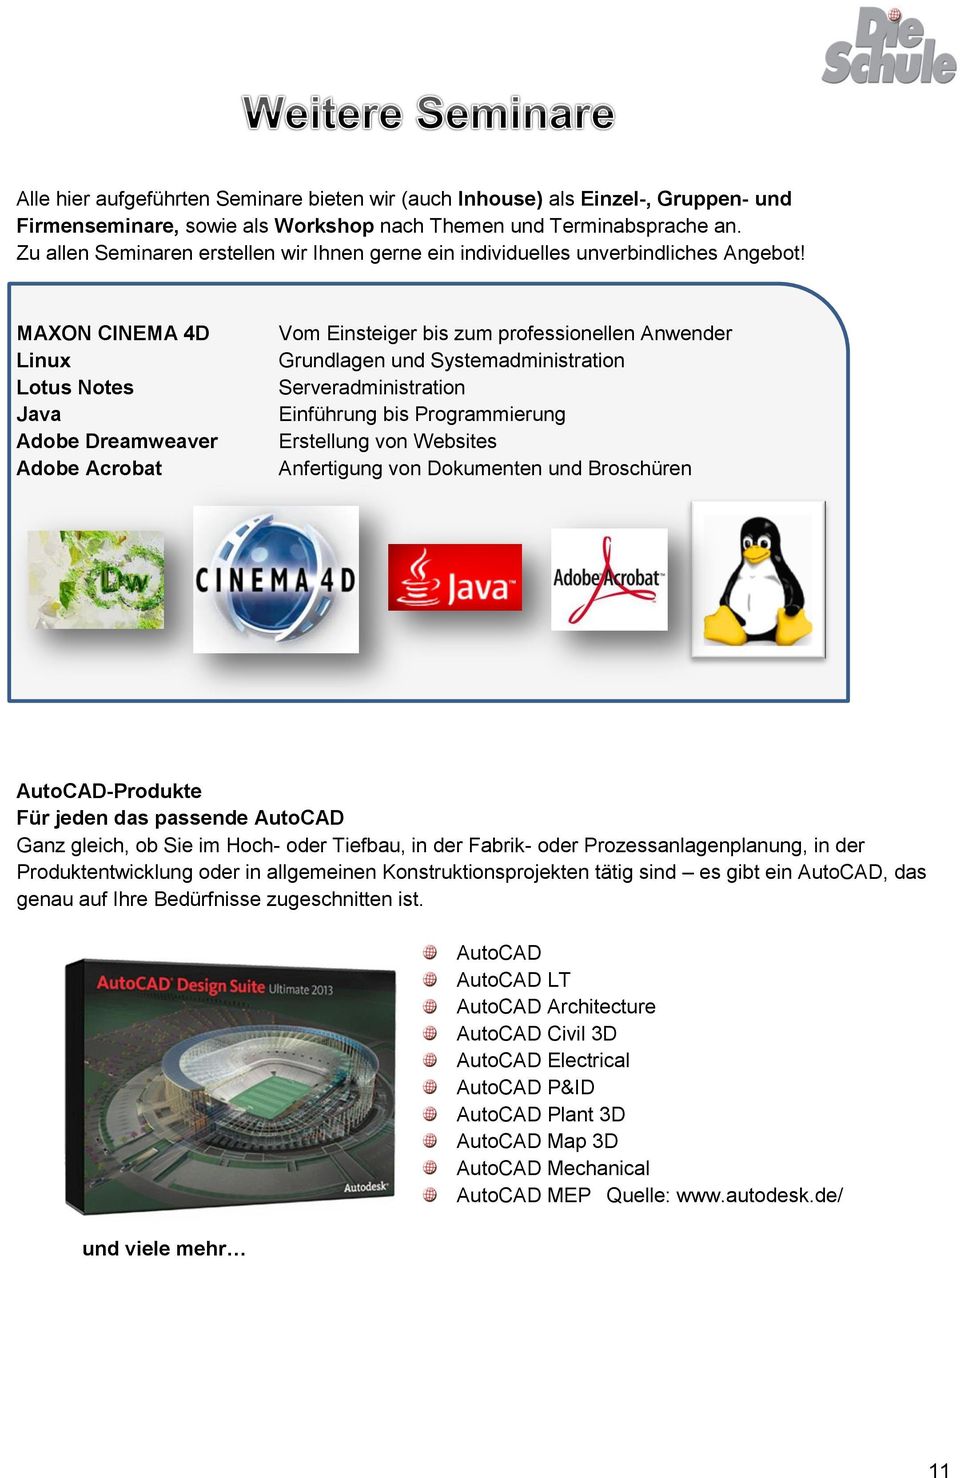 MAXON CINEMA 4D Linux Lotus Notes Java Adobe Dreamweaver Adobe Acrobat Vom Einsteiger bis zum professionellen Anwender Grundlagen und Systemadministration Serveradministration bis Programmierung